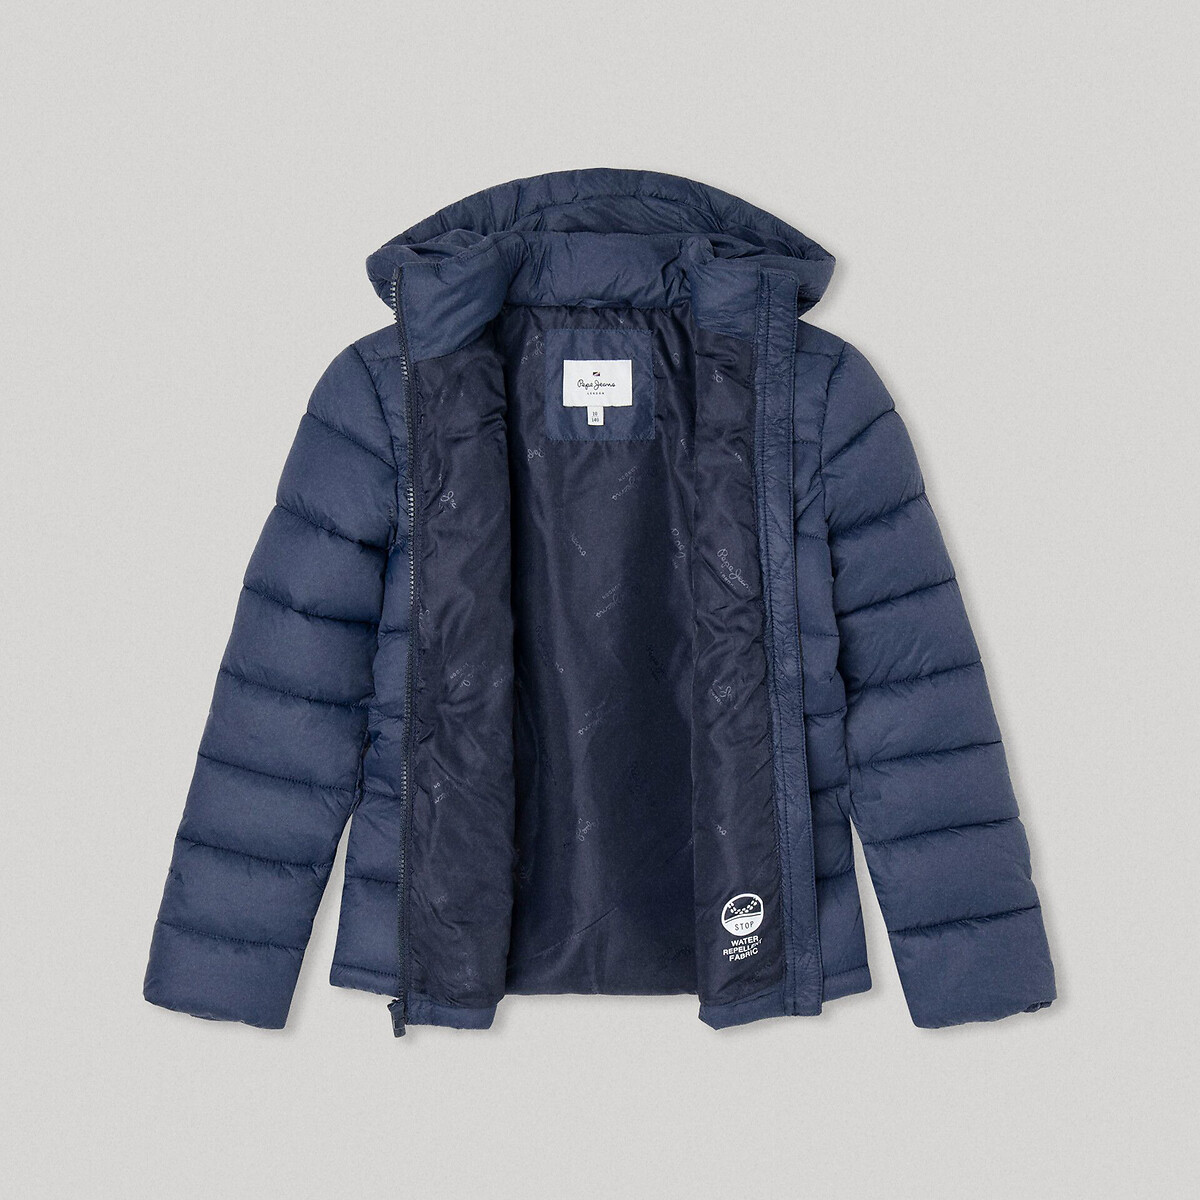 Куртка Стеганая с капюшоном 12 лет -150 см синий LaRedoute, размер 12 лет -150 см - фото 2